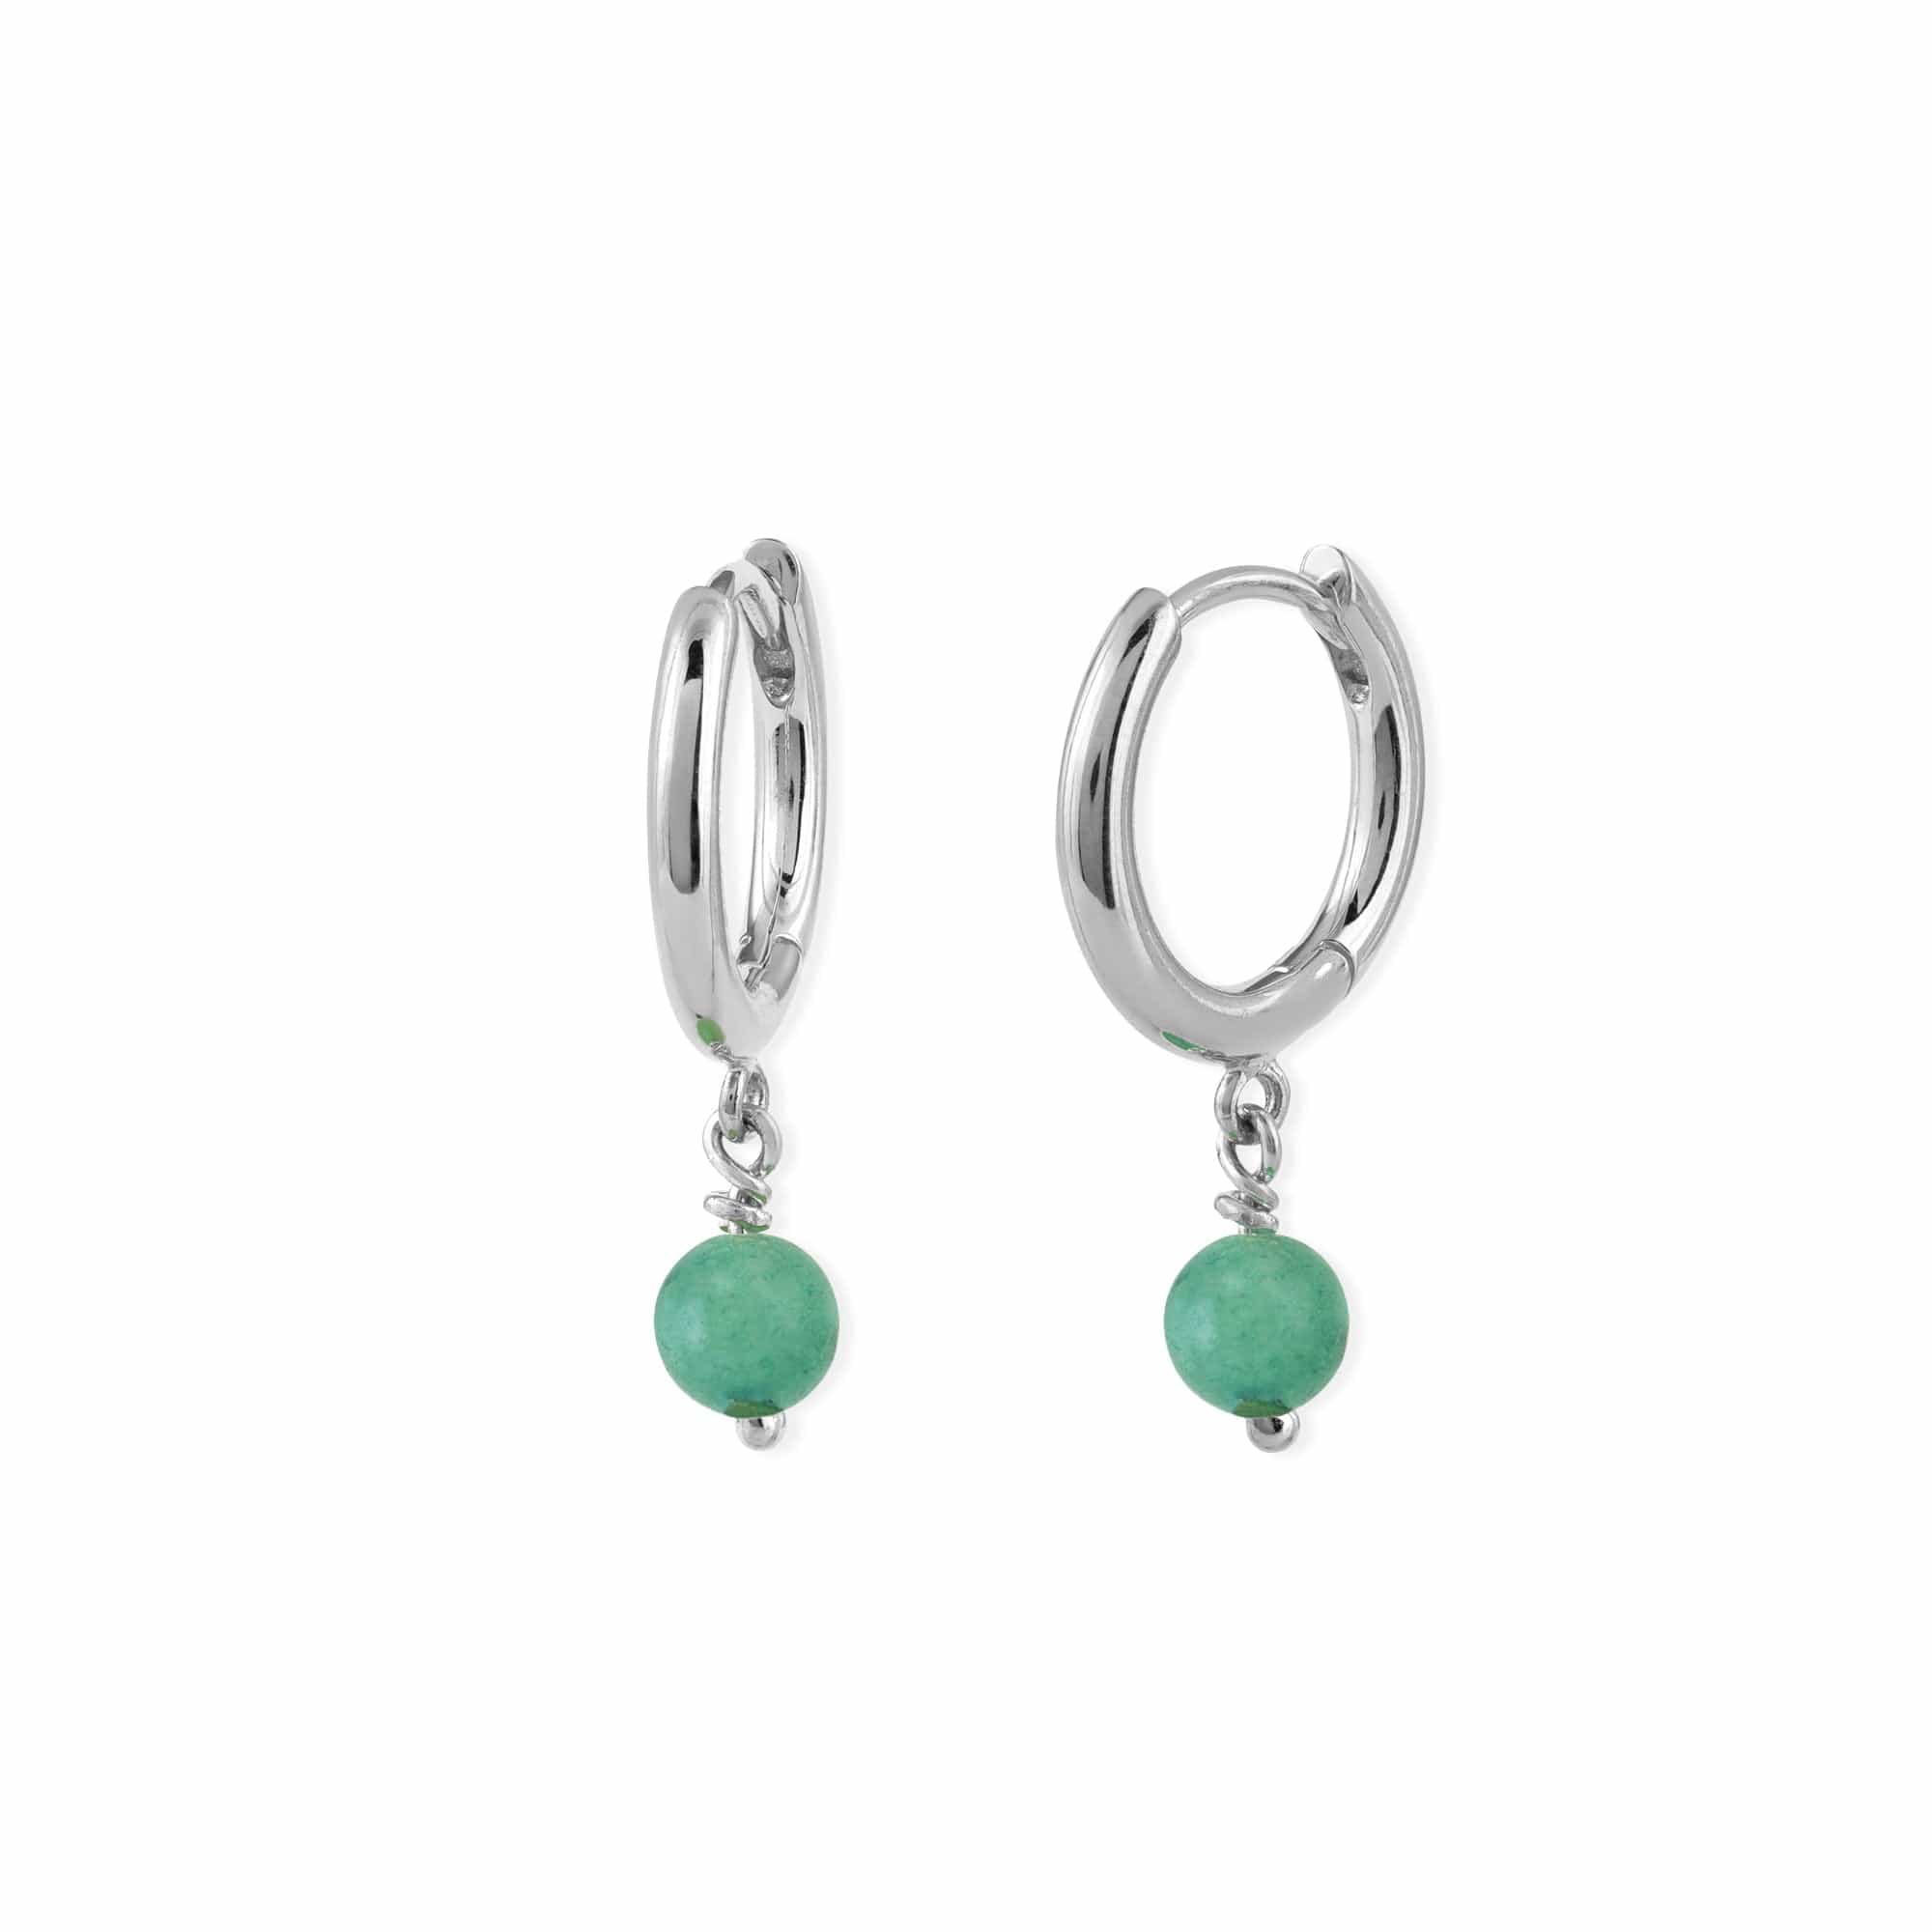 Boma Jewelry Earrings Aventurine / Sterling Silver Treasured Drop Huggies